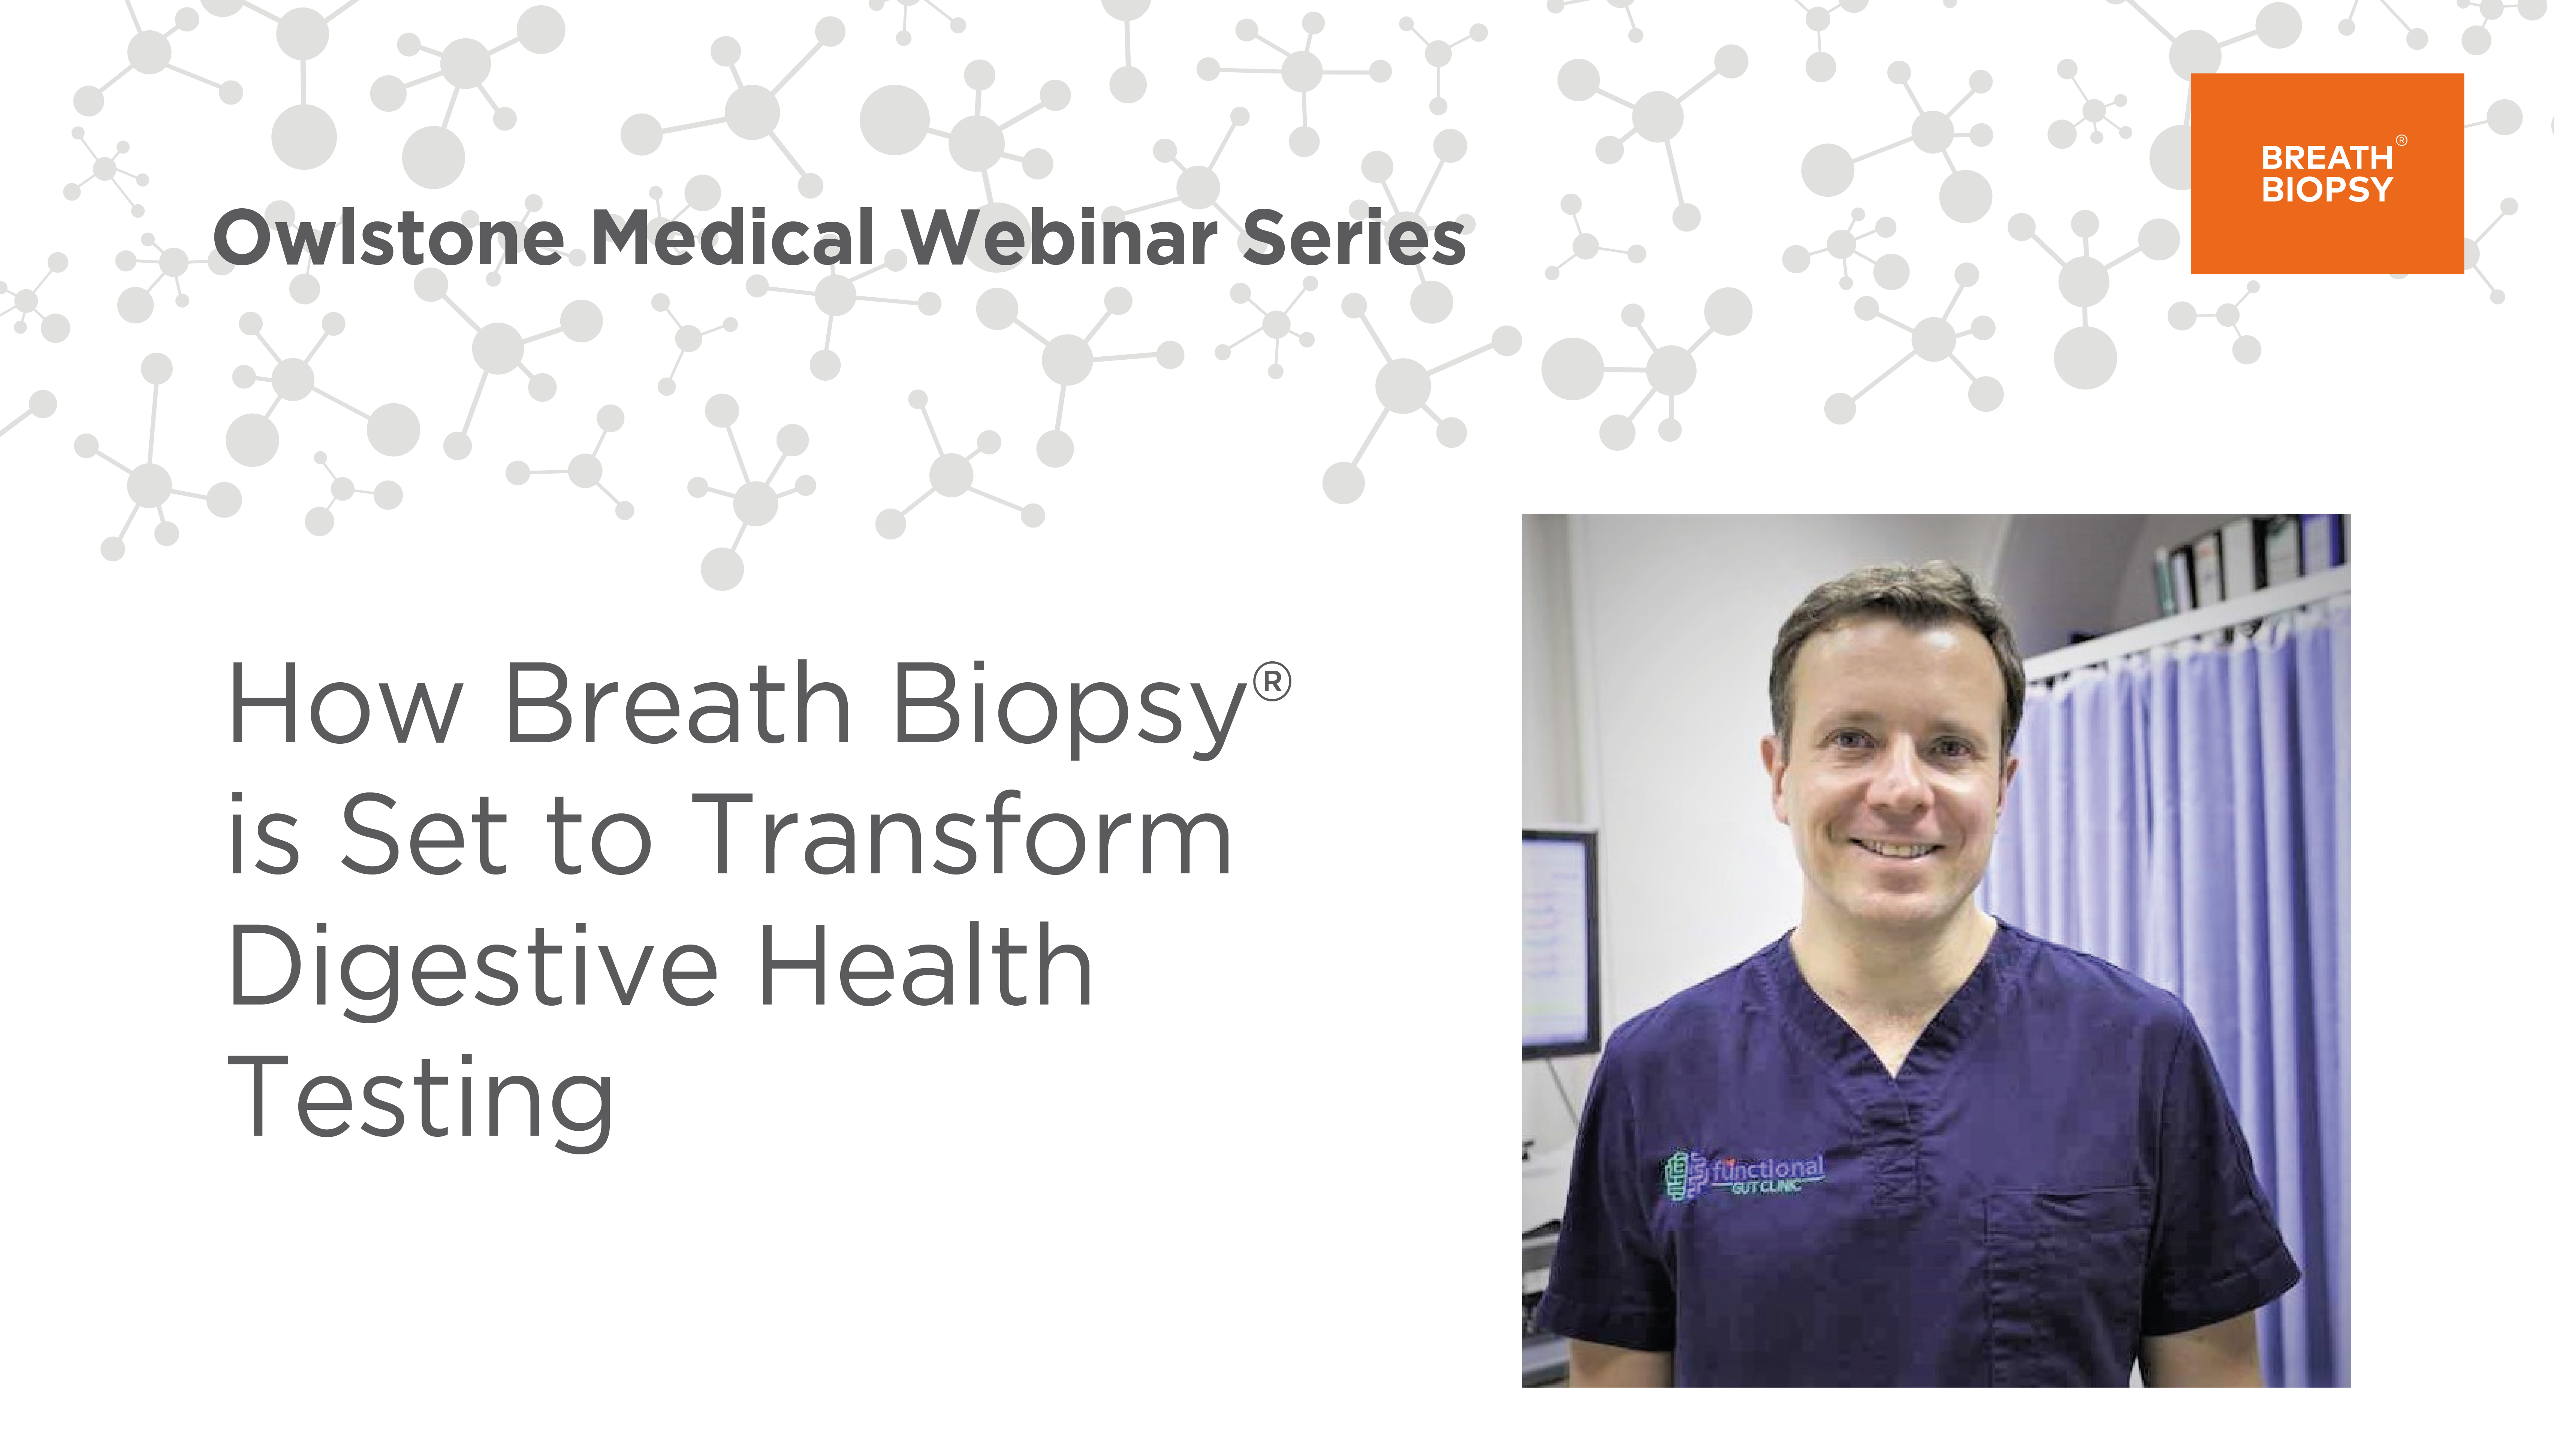 Owlstone Medical Webinar – Breath Biopsy® and Digestive Health Testing